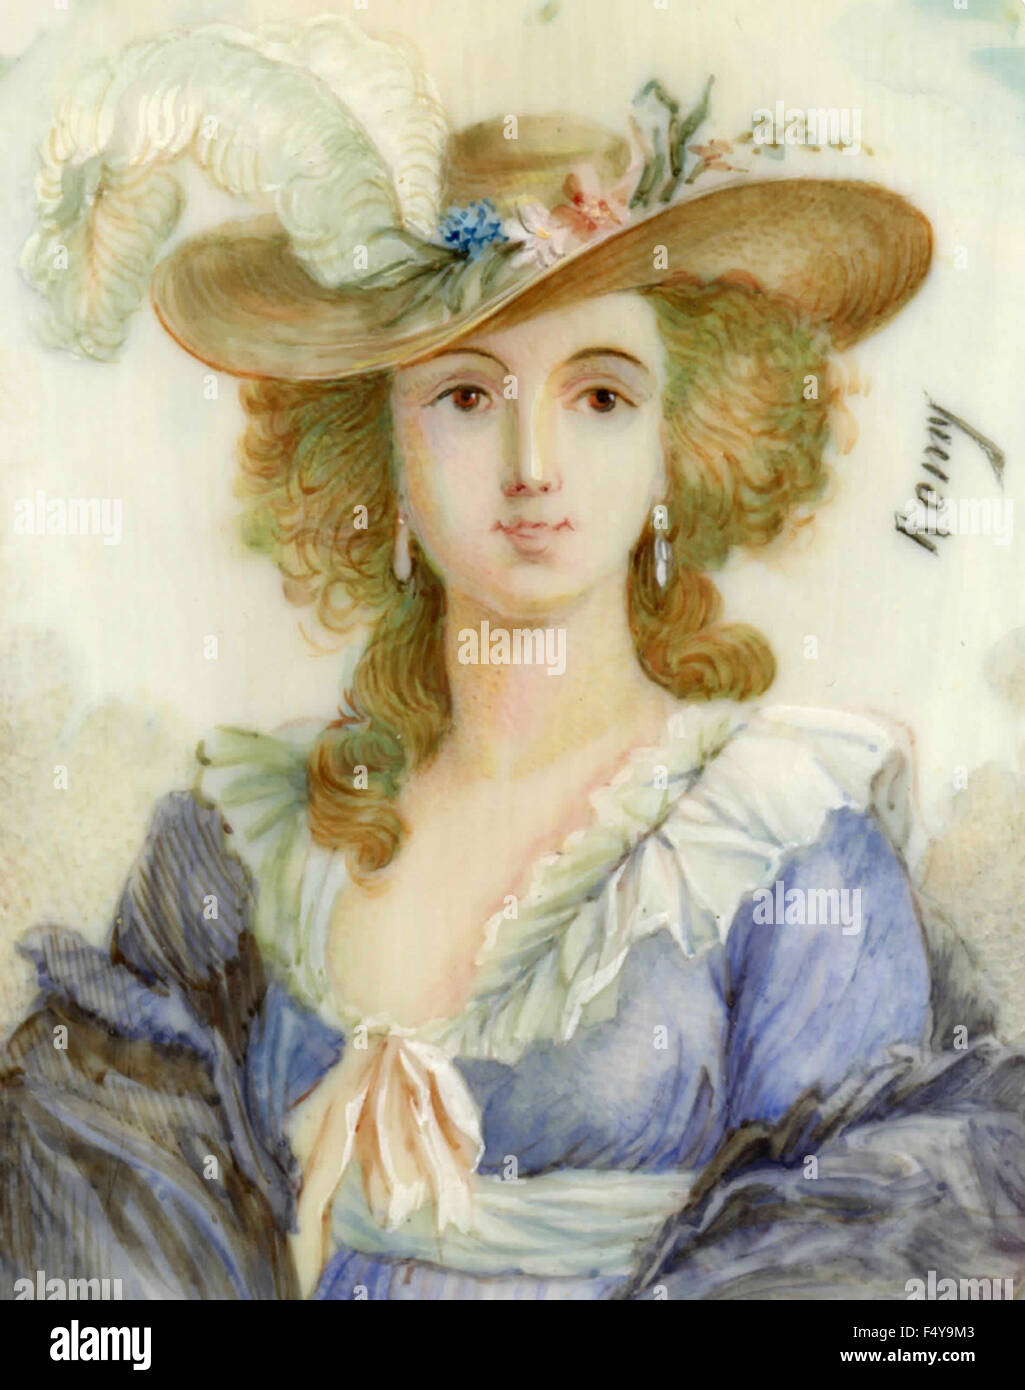 Les chapeaux et les robes de la mode française de 1700 Banque D'Images